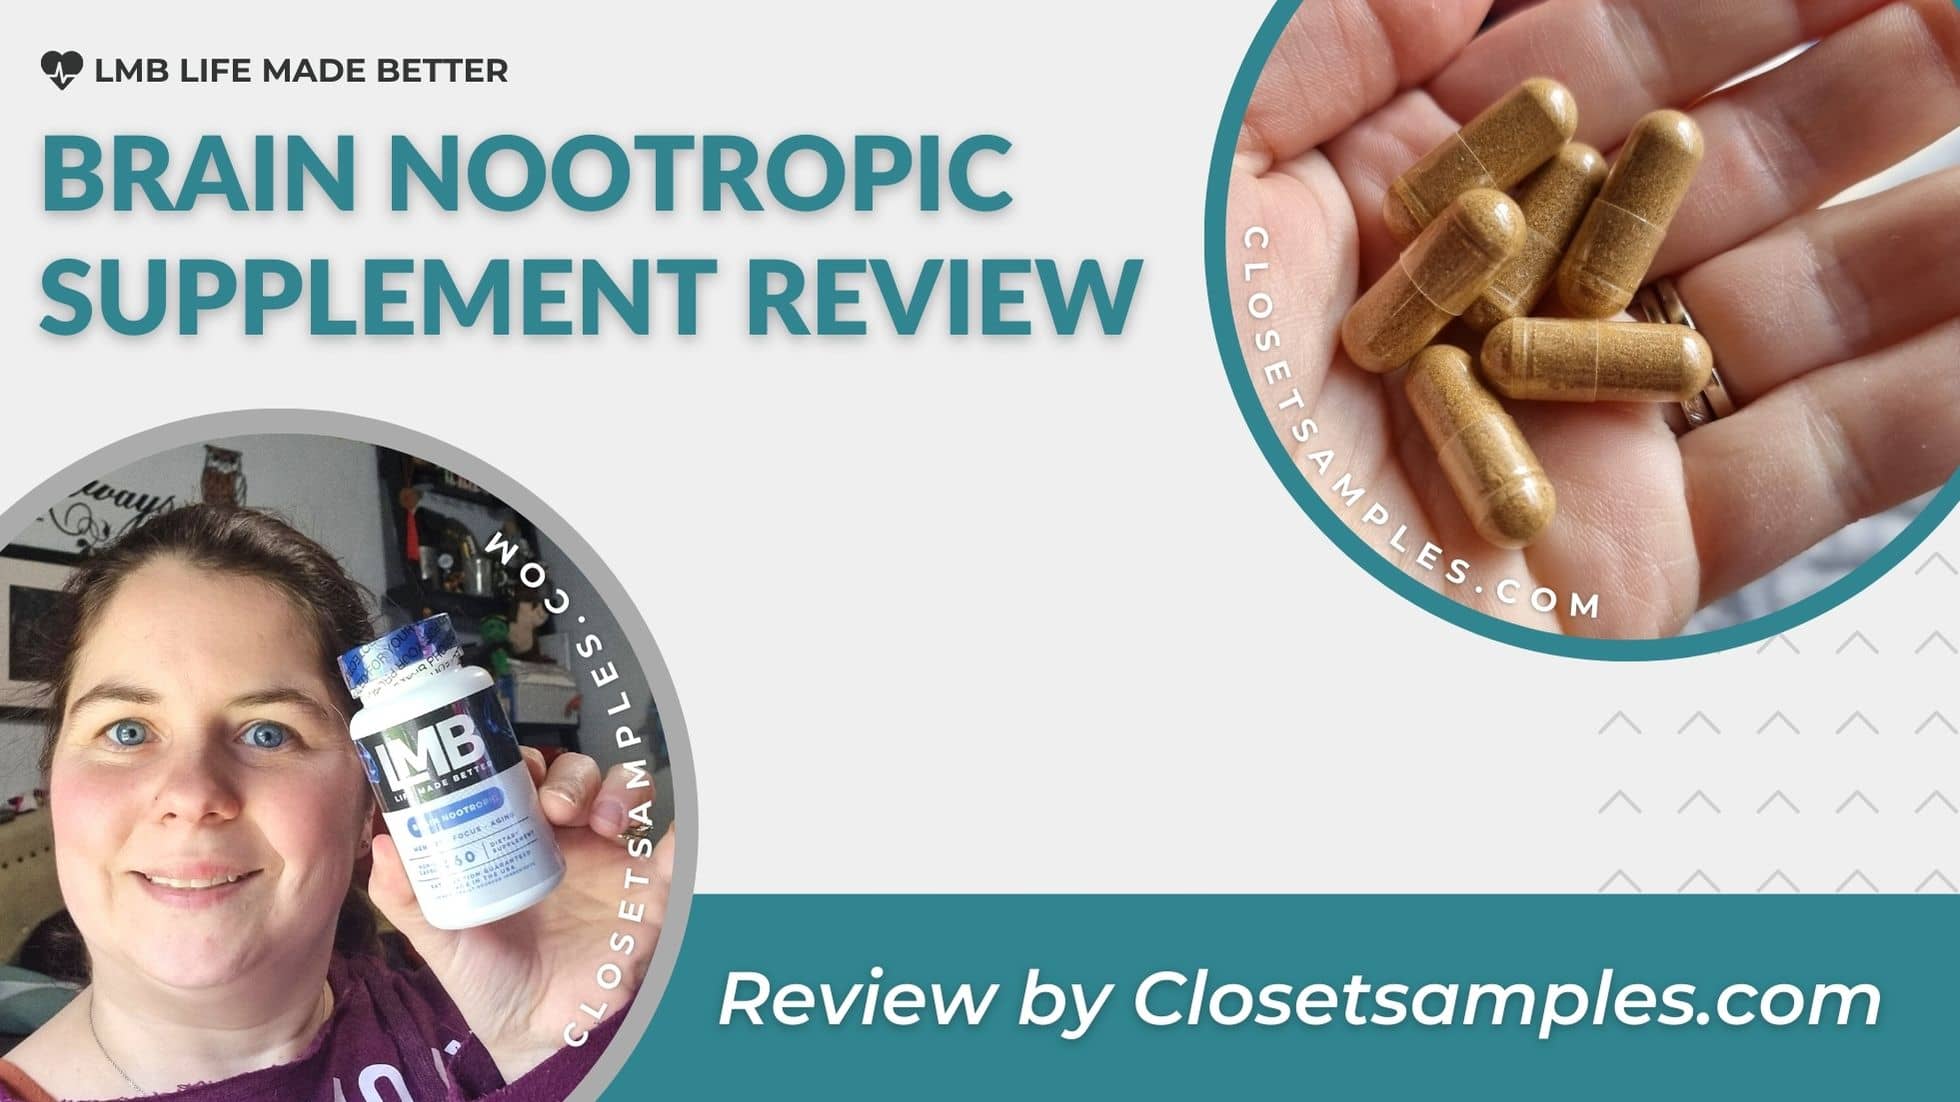 LMB Brain Nootropic Supplement Review closetsamples